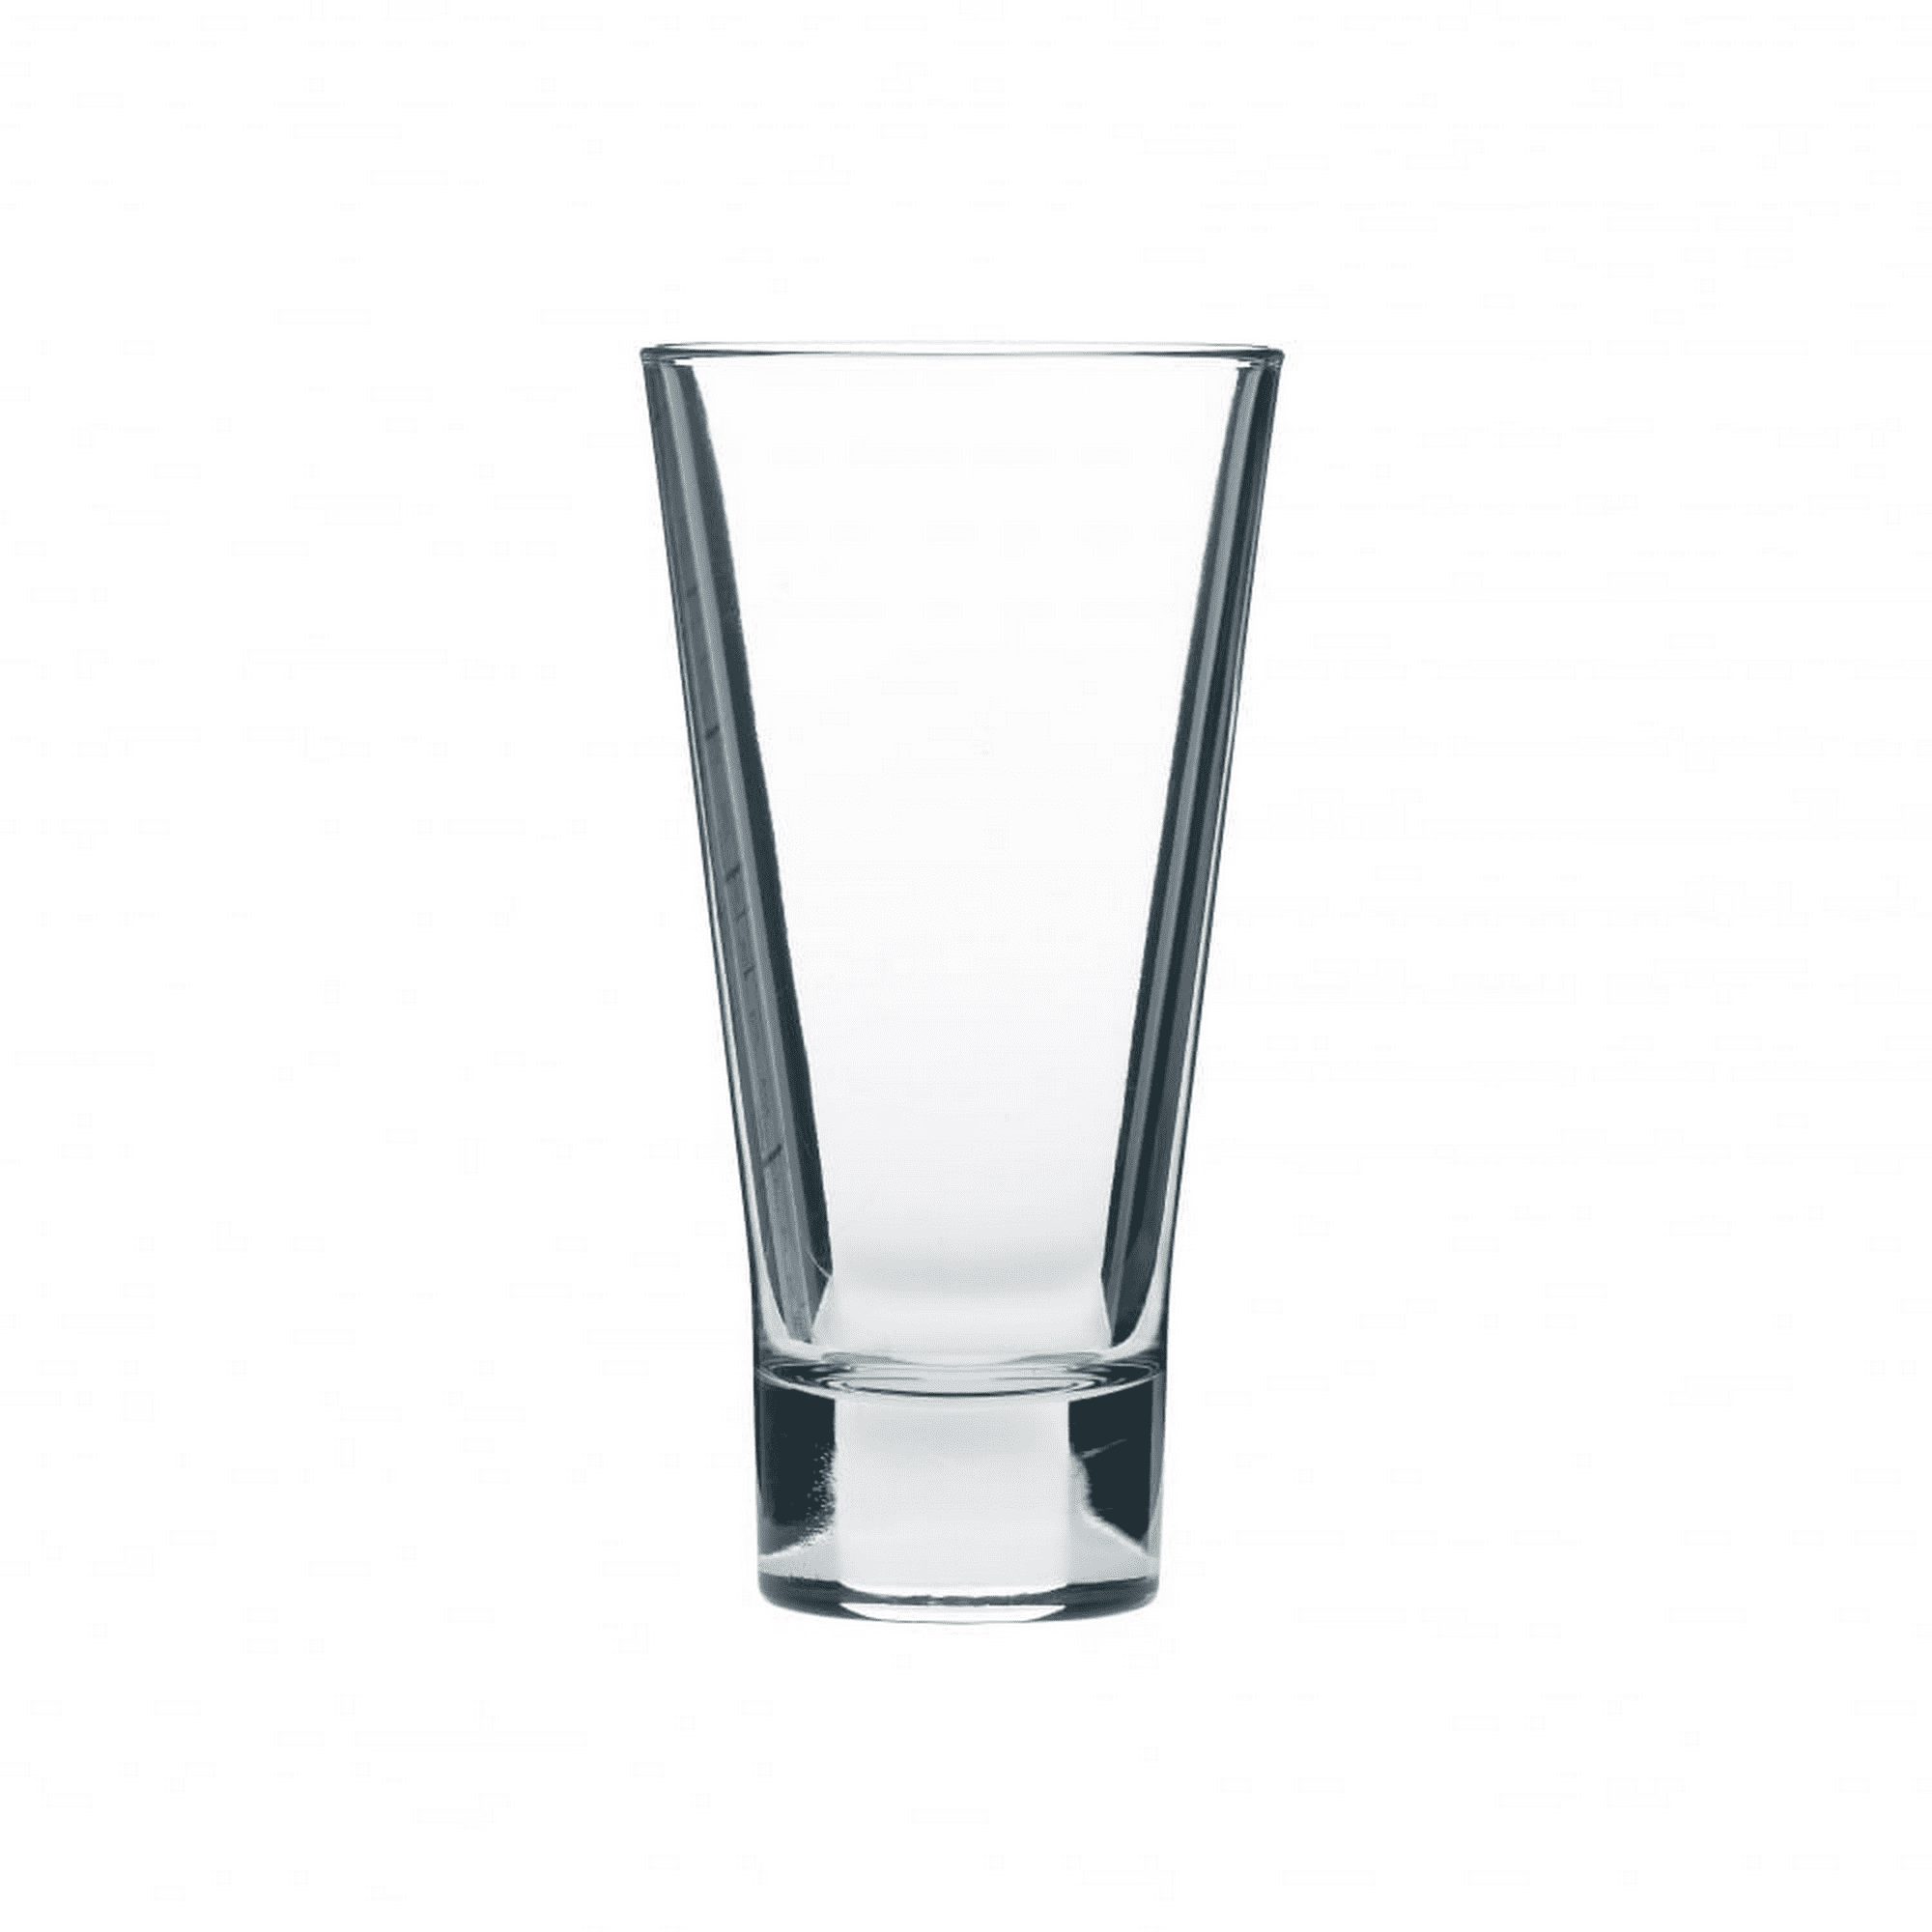 Juego de vasos sección vidrio. - Tienda online Milagro